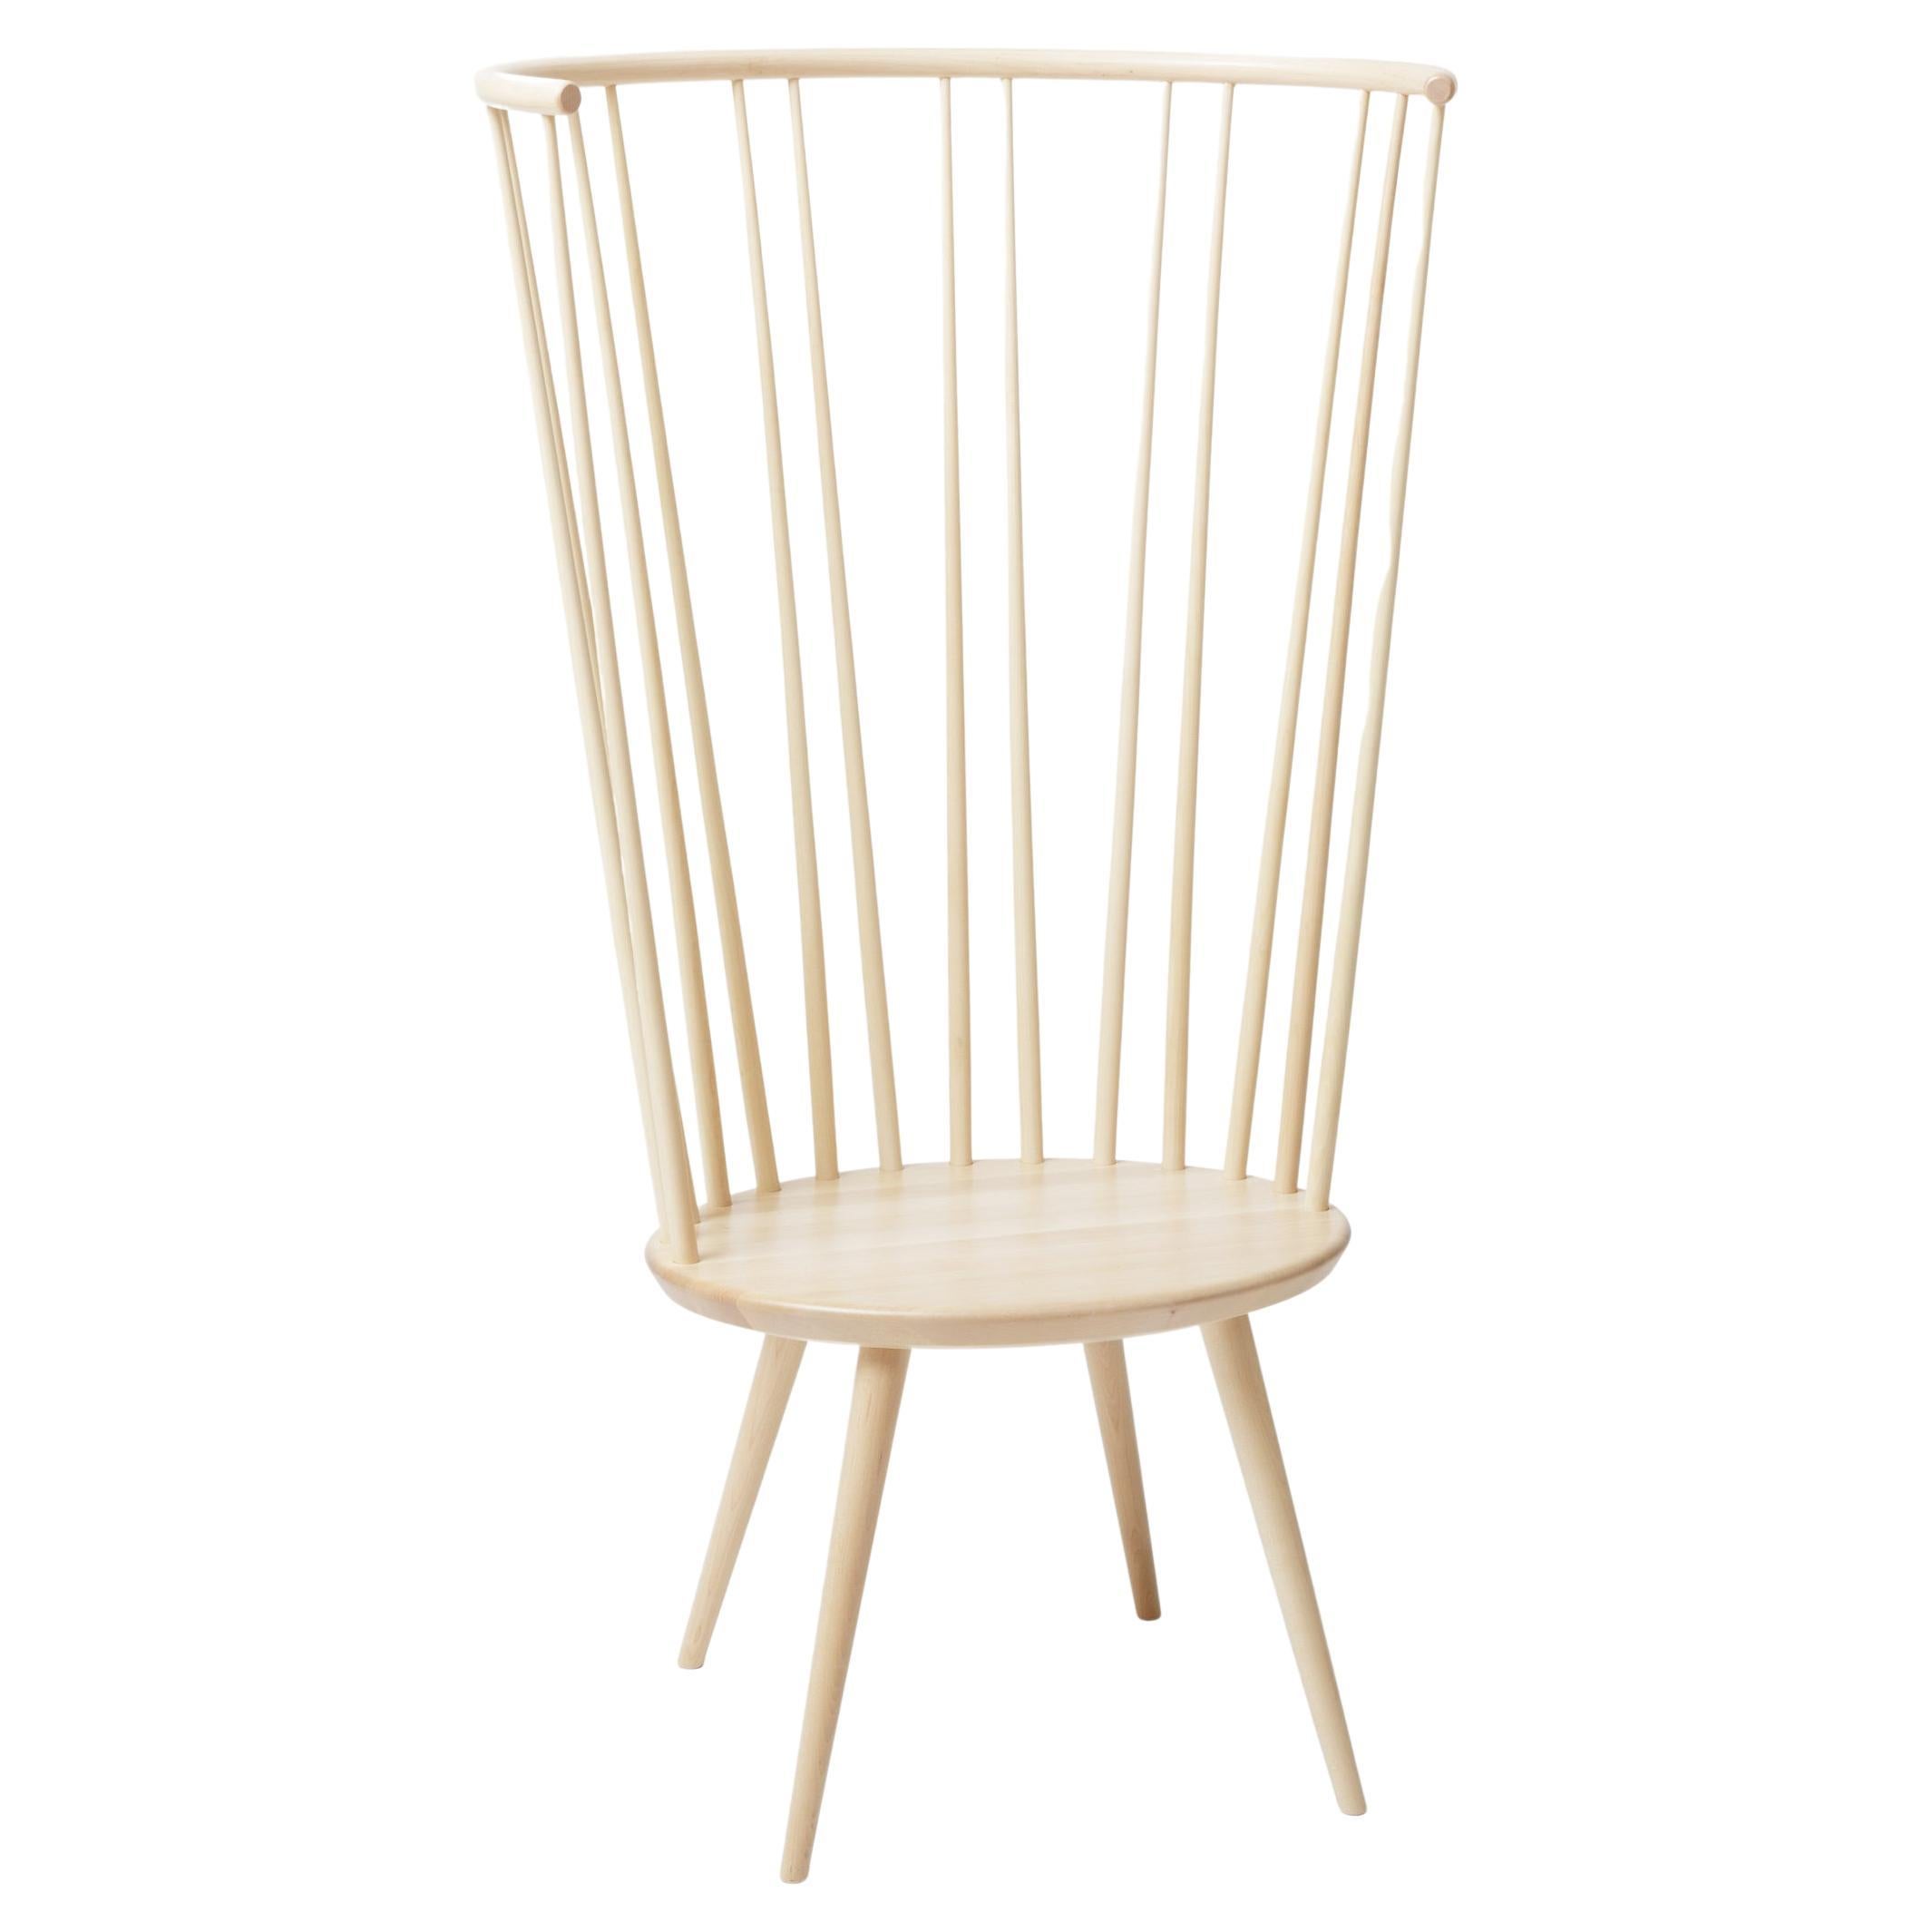 Natural Storängen Birch Chair by Storängen Design